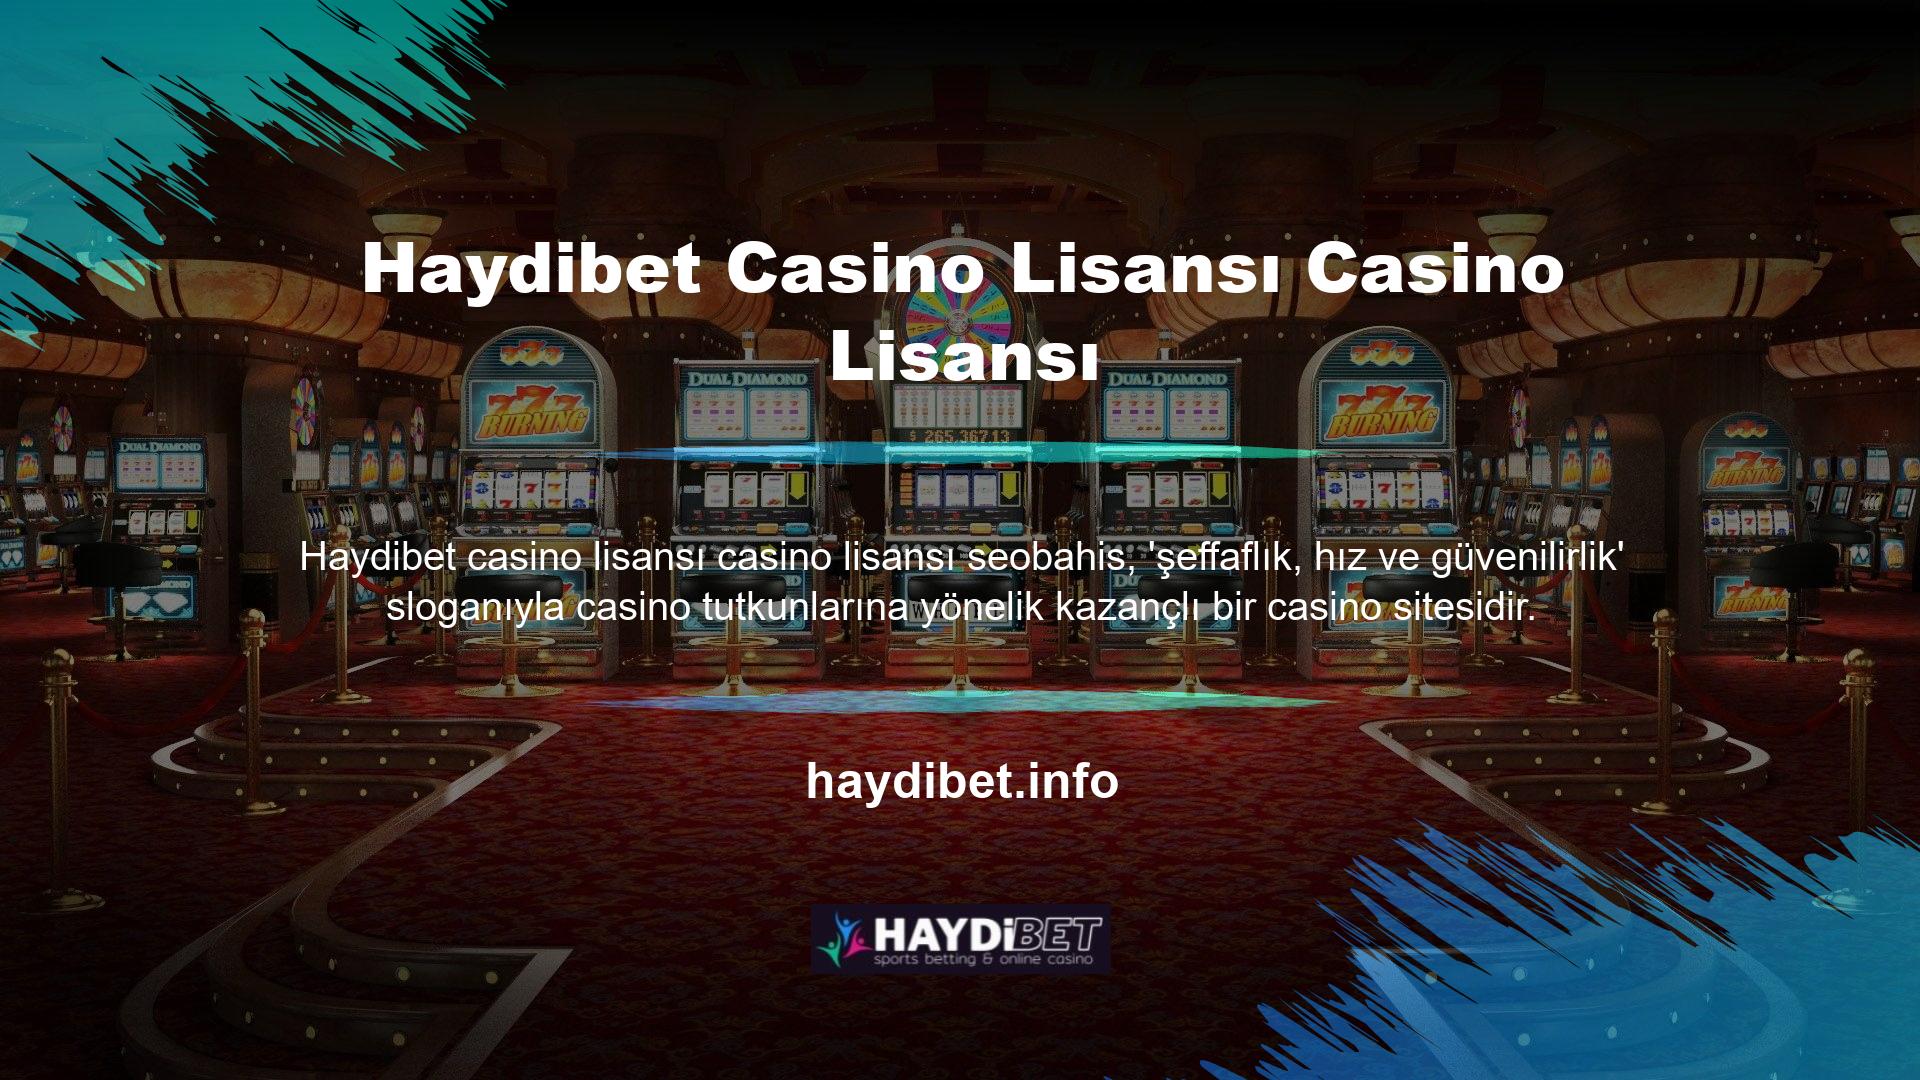 Aslında Haydibet Casino Lisanslaması, lisans bilgilerini casino lisanslama sistemindeki tüm oyunculara şeffaf bir şekilde iletir